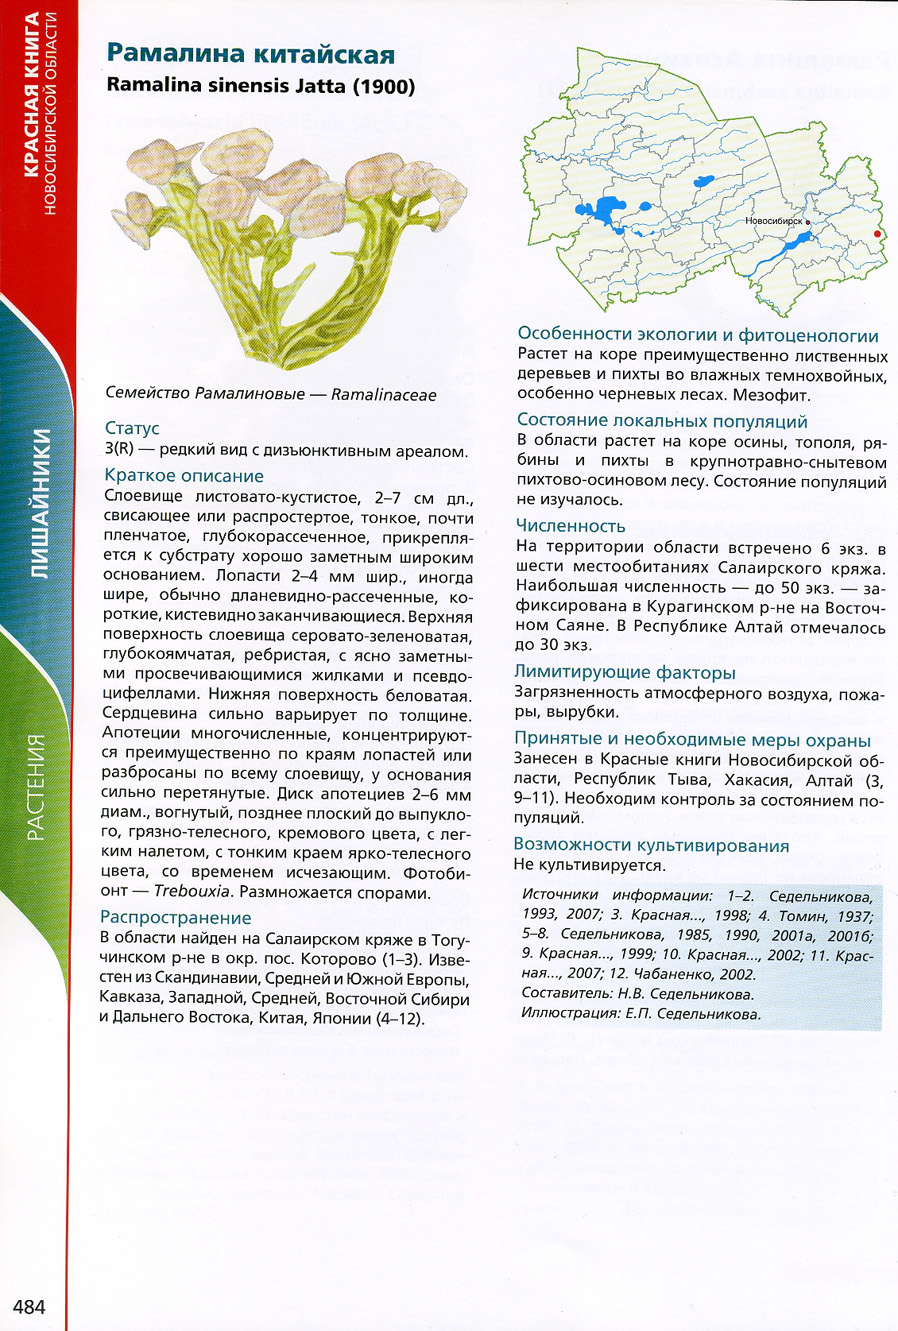 Редкие растения Новосибирской области занесенные в красную книгу